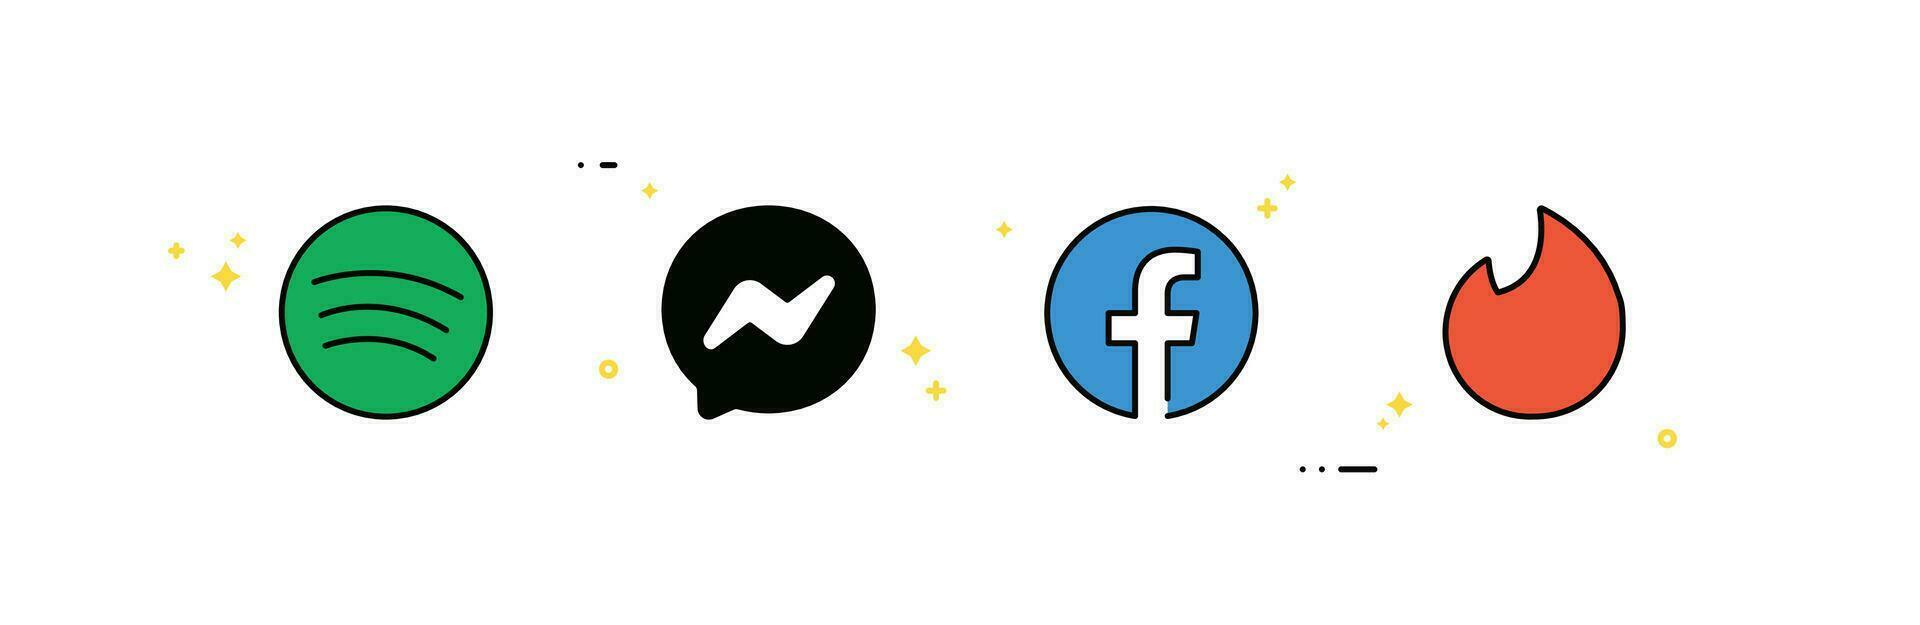 social medios de comunicación logo iconos, Facebook, gorjeo, instagram, whatsapp, YouTube, Tik Tok y plano diseño estilo mínimo variedad vector ilustración.